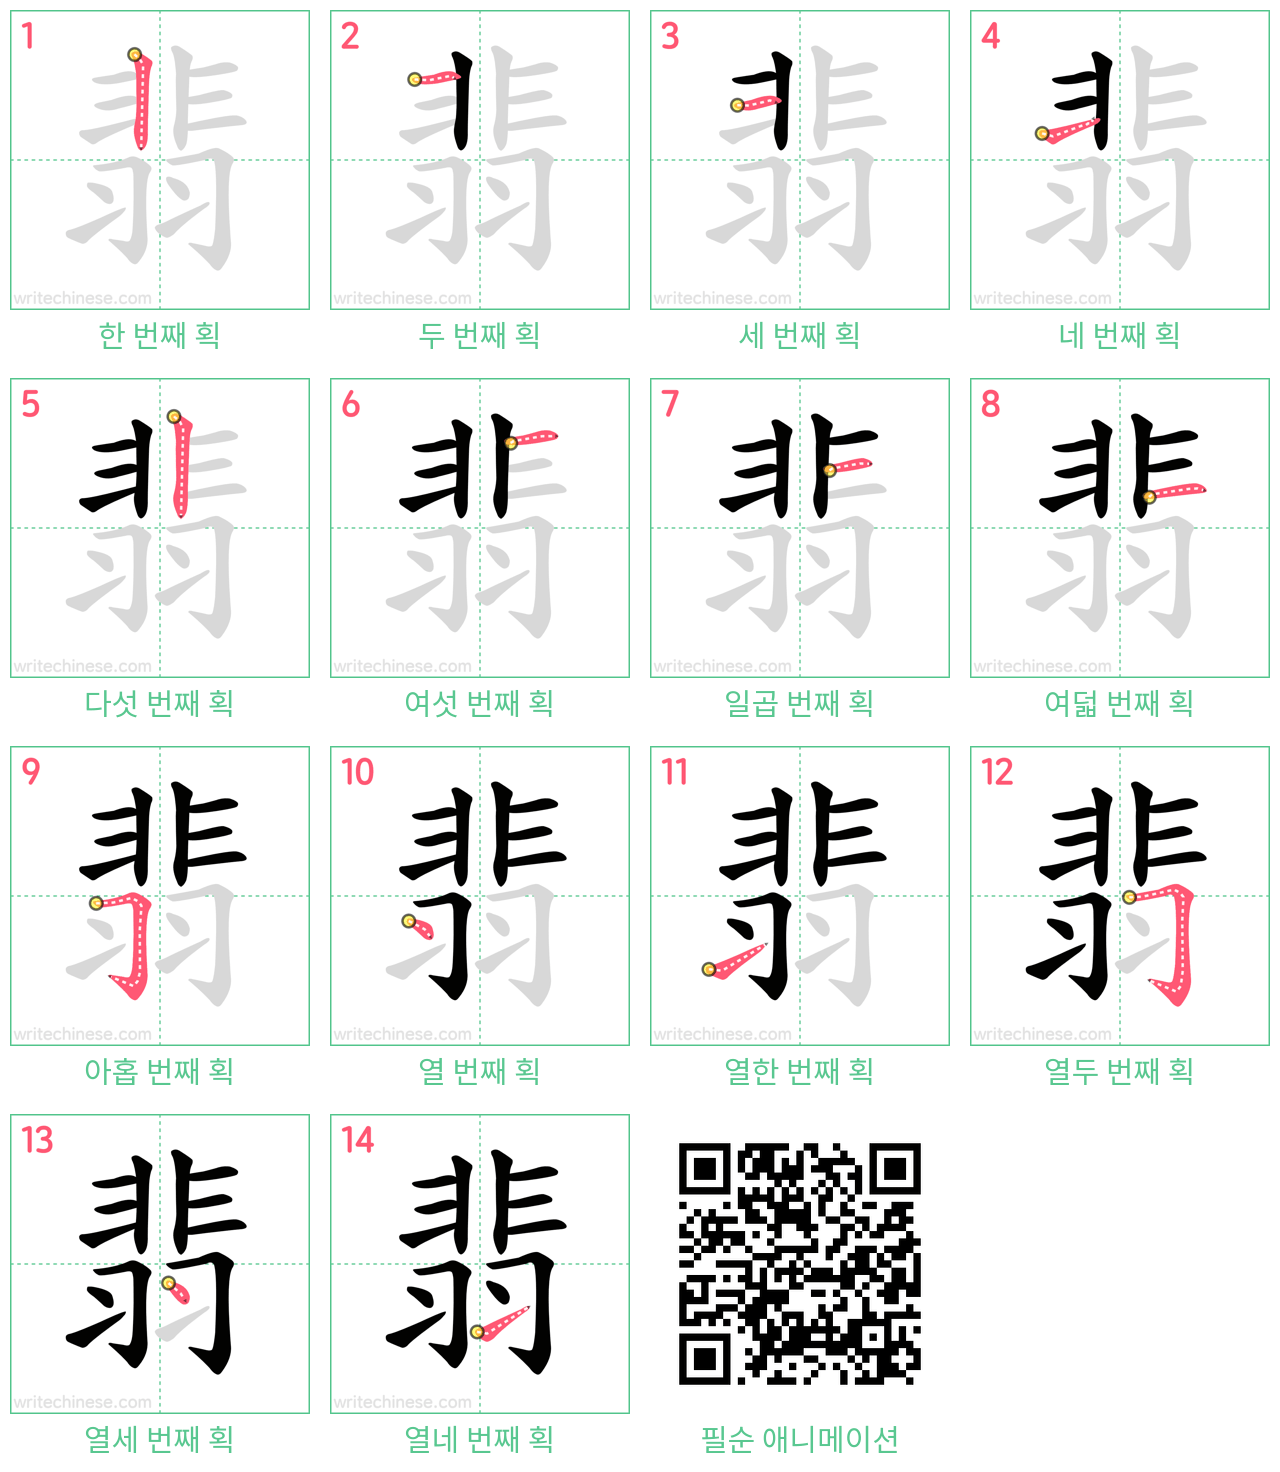 翡 step-by-step stroke order diagrams